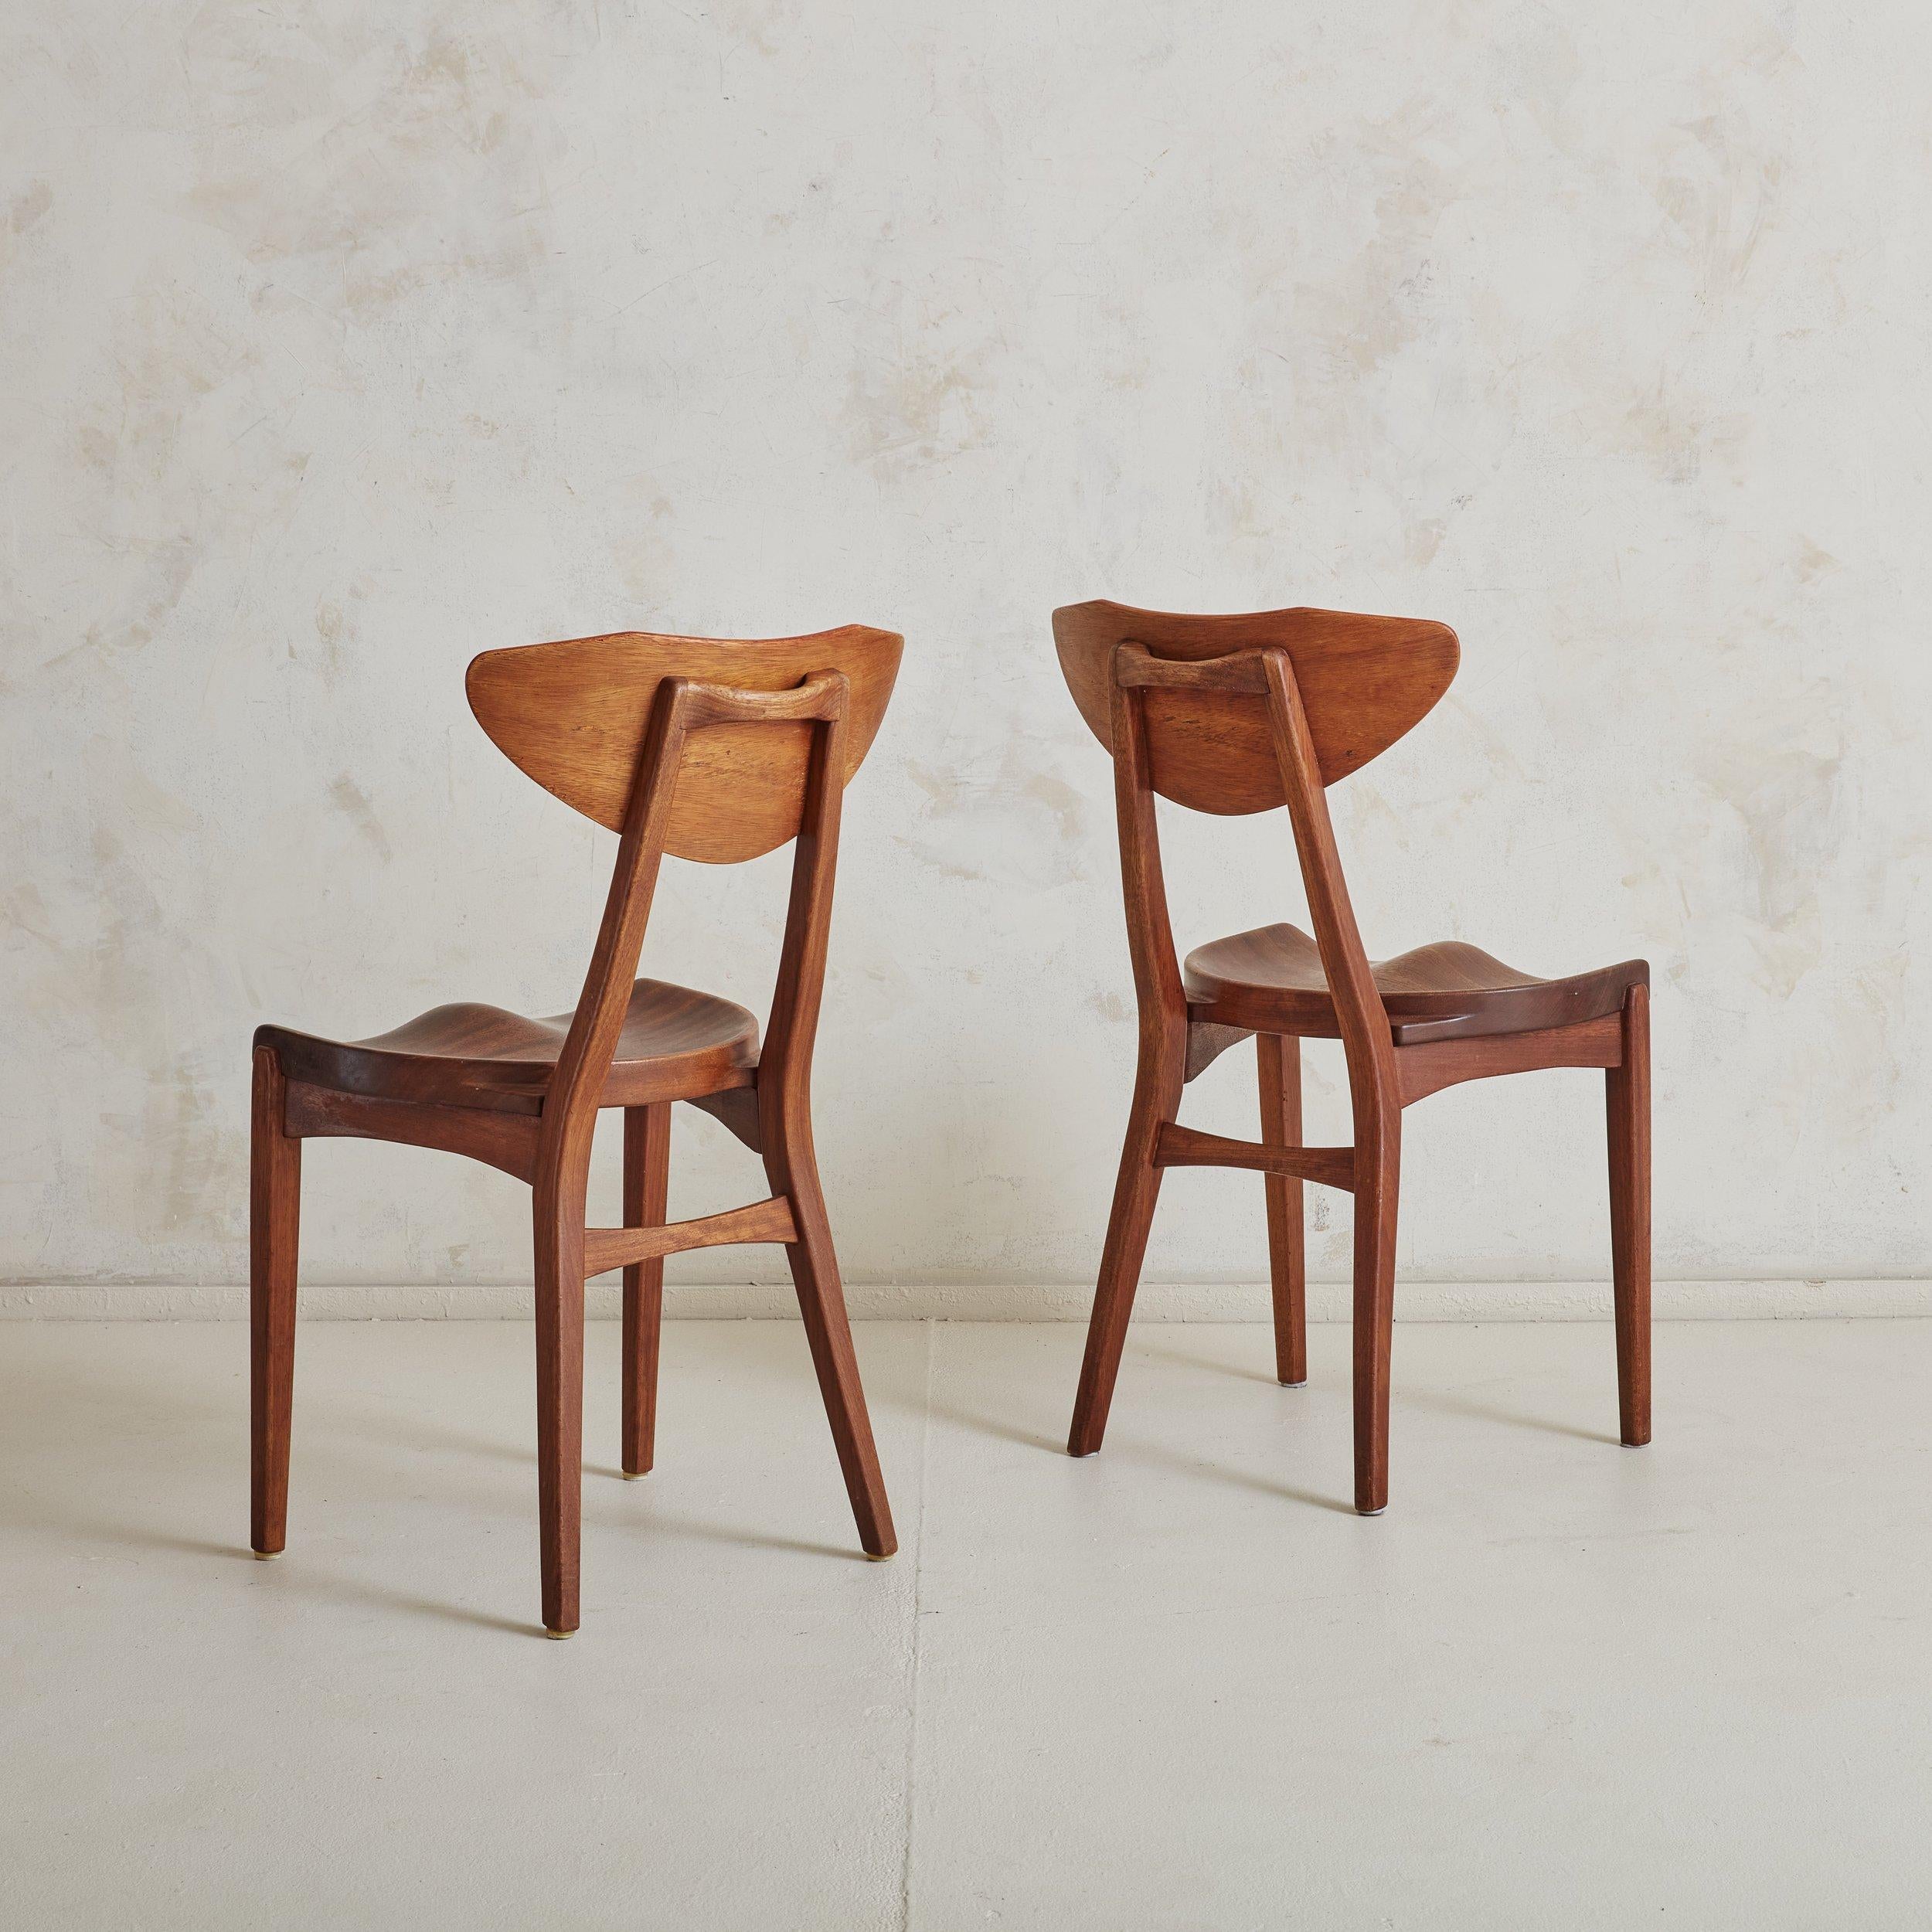 Paire de chaises de salle à manger danoises modernes conçues par Richard Jensen & Kjærulff Rasmussen, avec des cadres sculpturaux construits en acajou riche et brun foncé, avec une patine naturelle et des veinures étonnantes. Les sièges sculptés